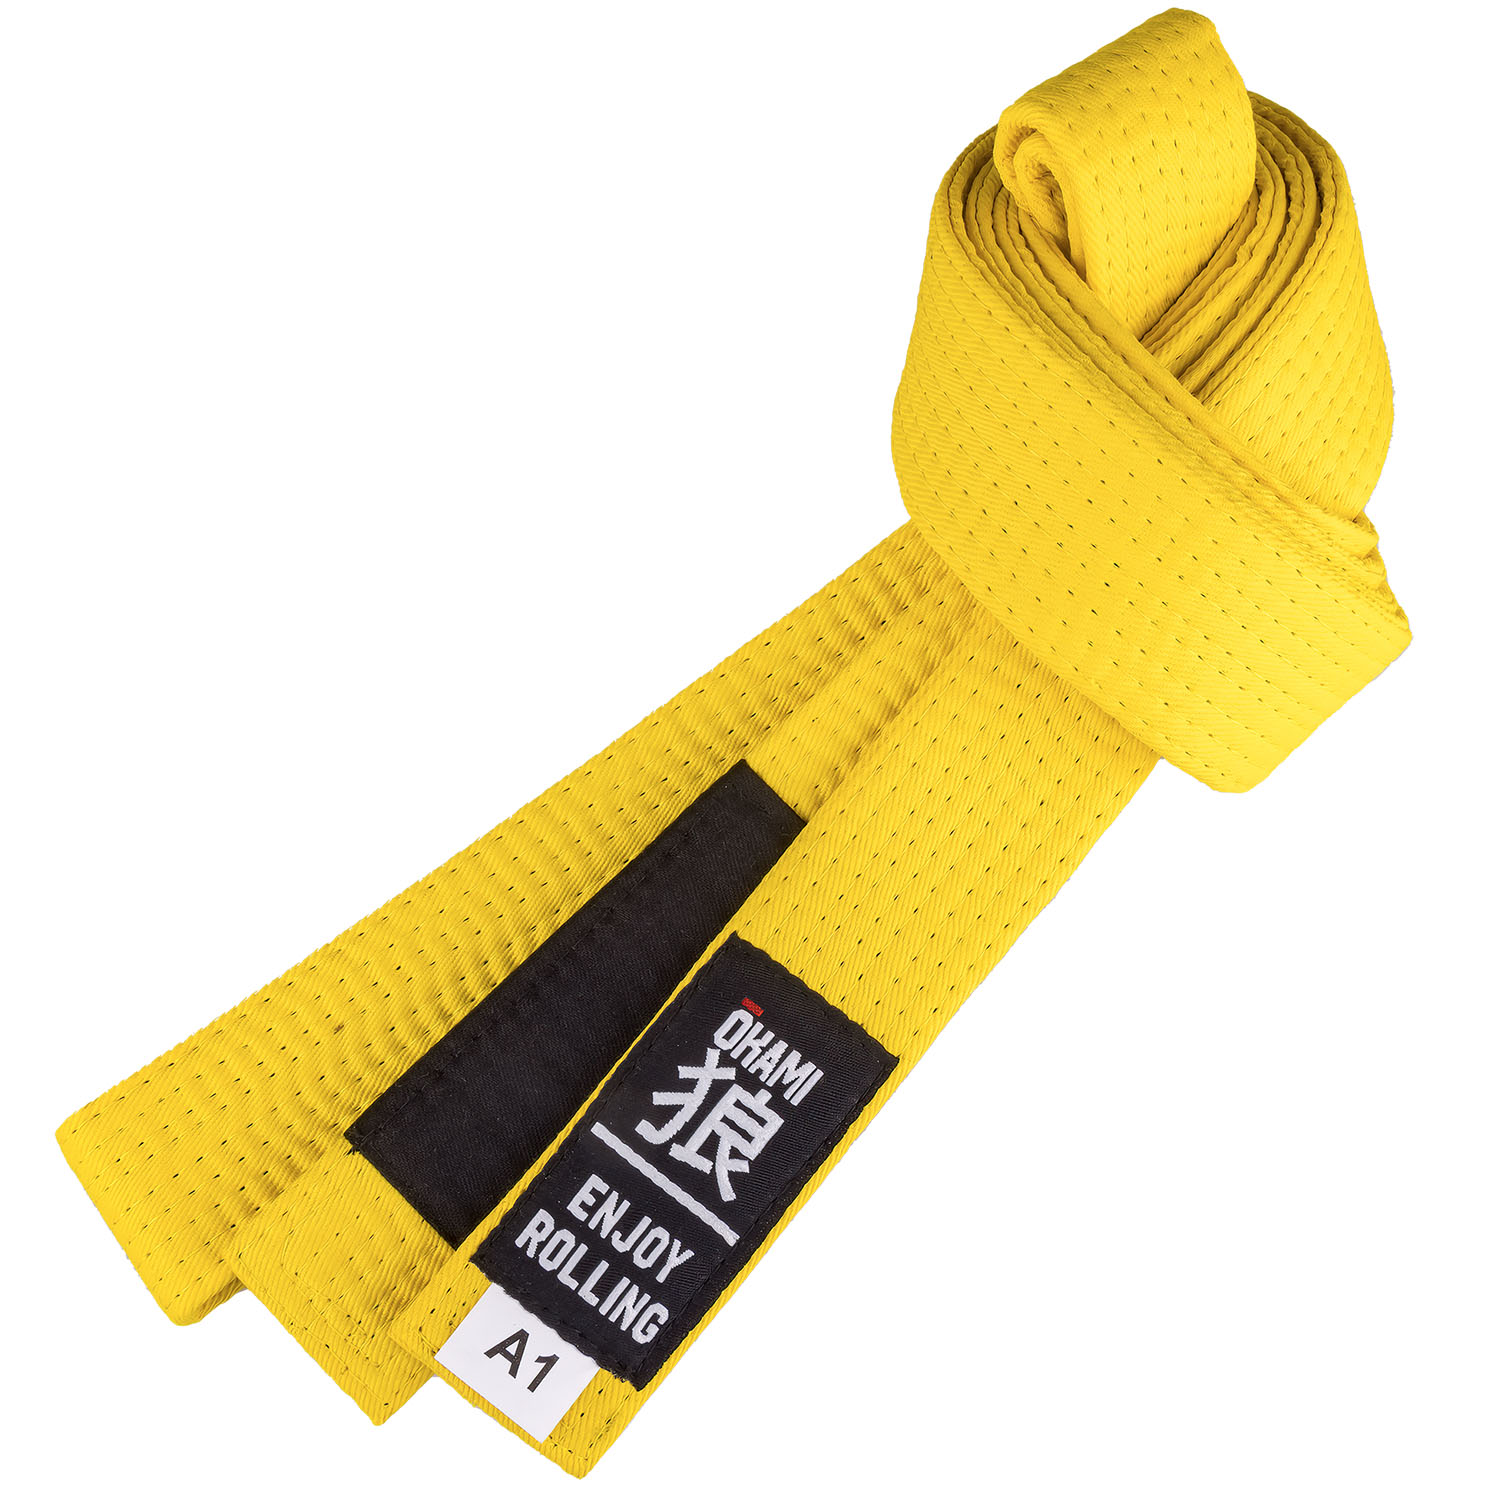 OKAMI BJJ Belt, Luta Livre, yellow, A1